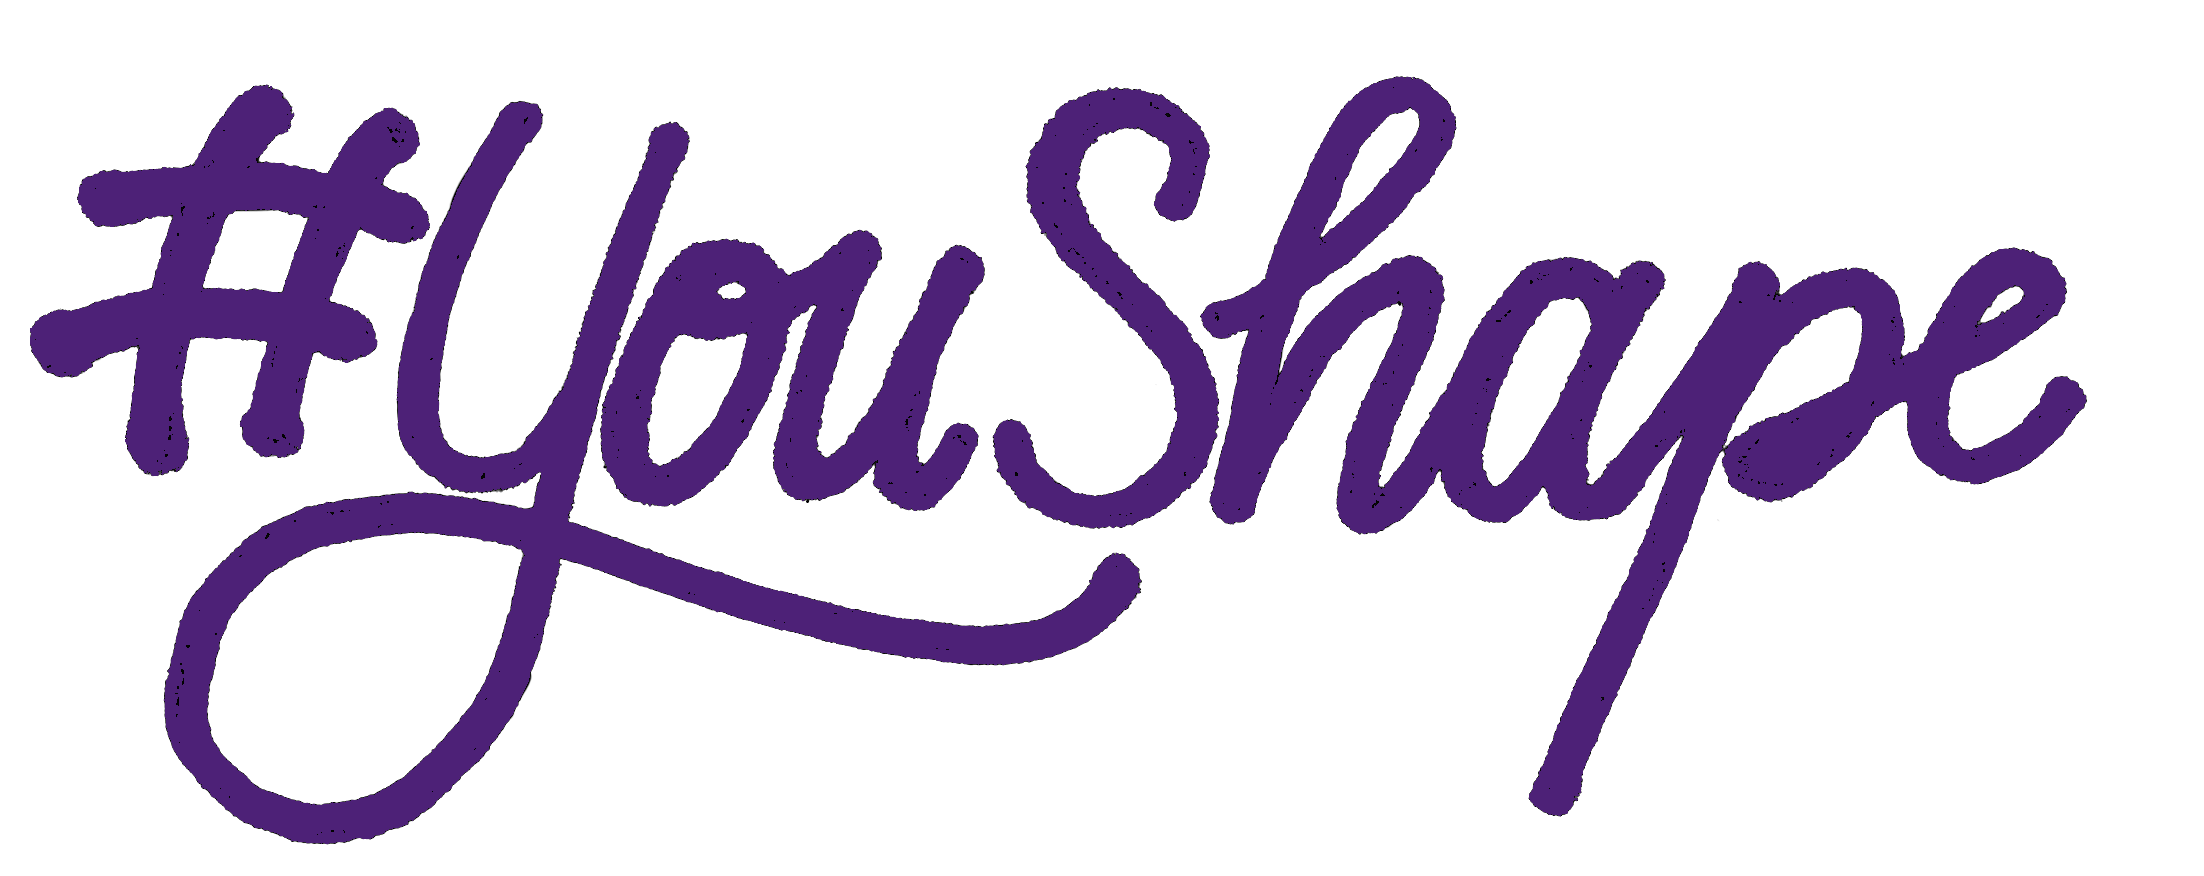 Youshape purple